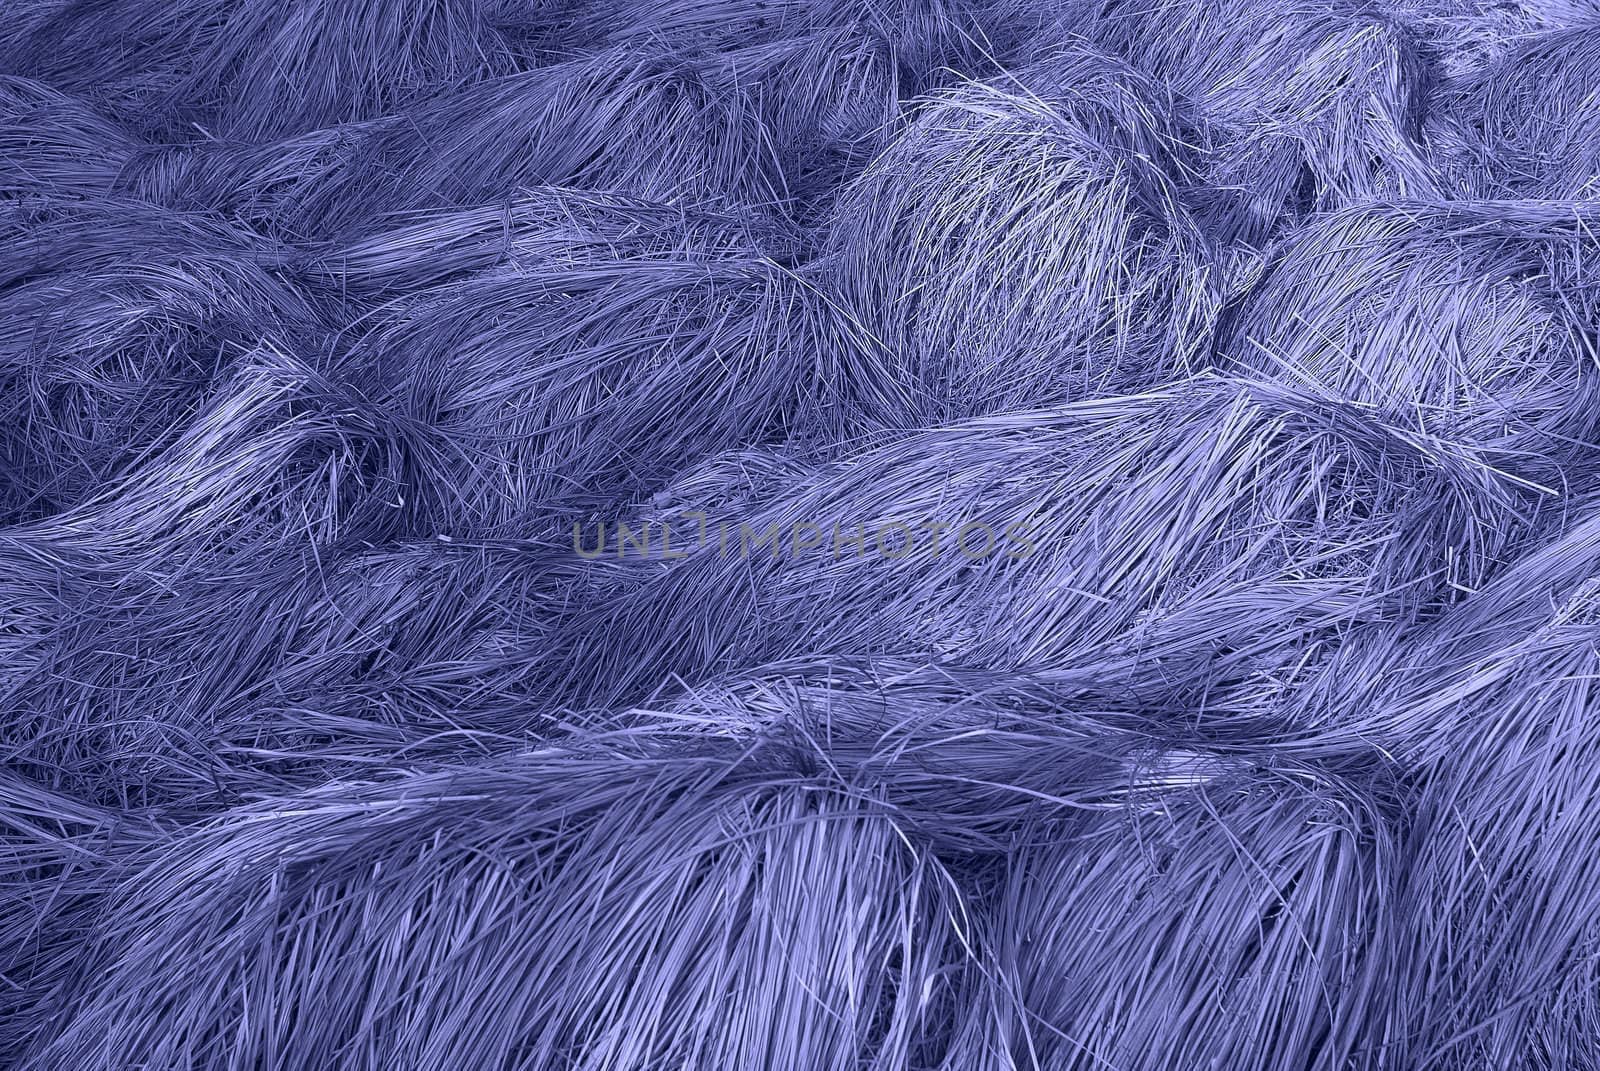 Blue grass by Kamensky